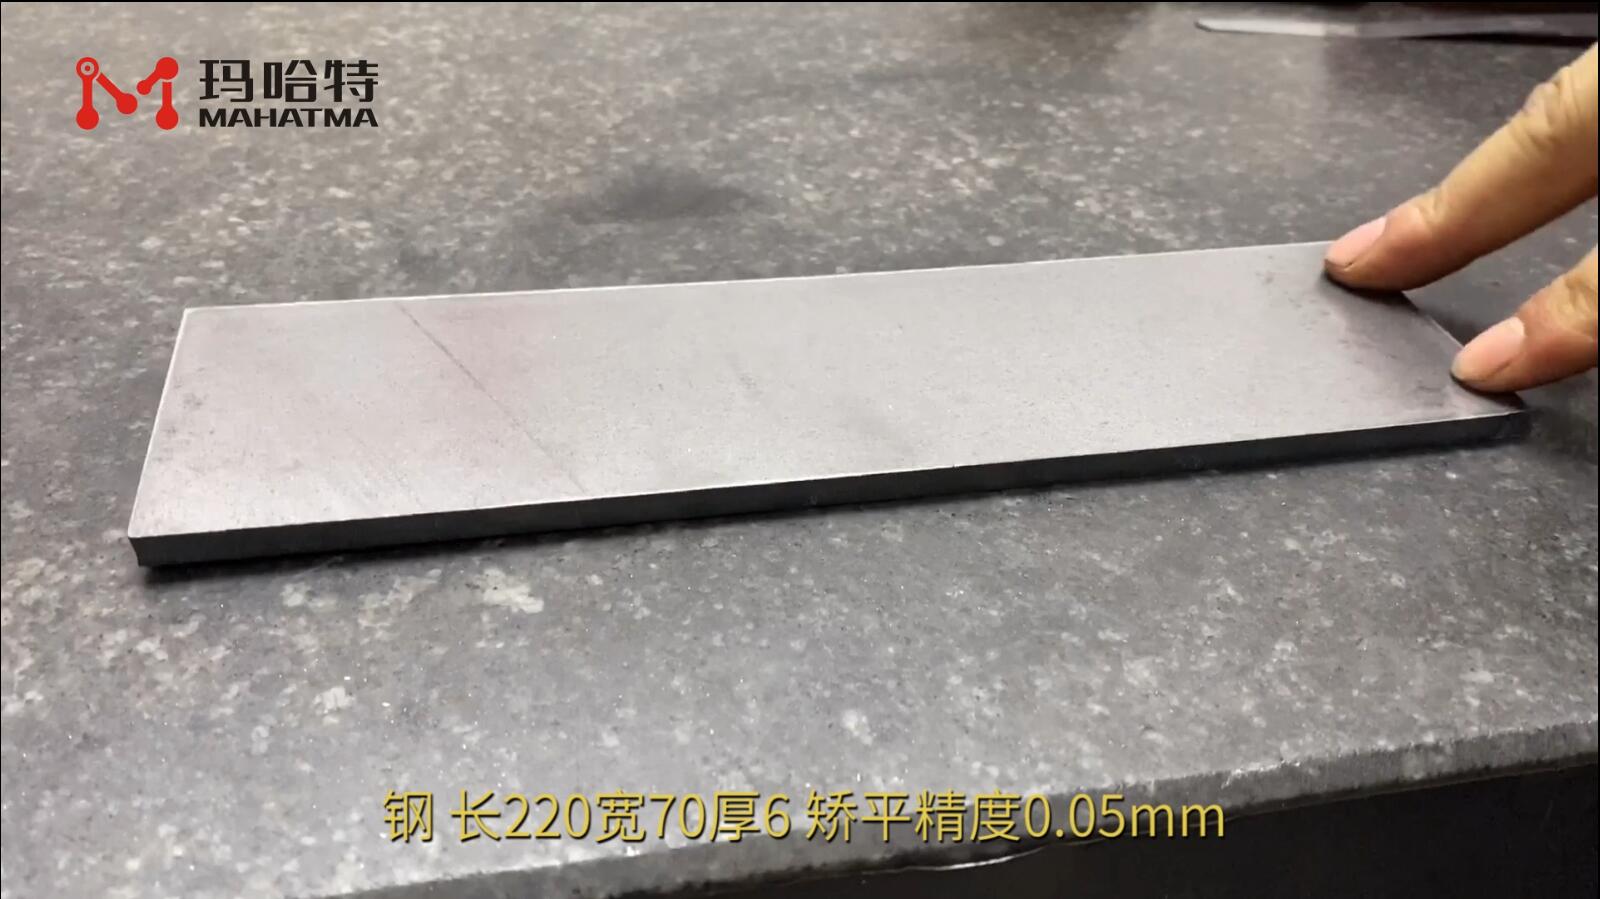 钢 MHT60-600 长方形 长220宽70厚6mm